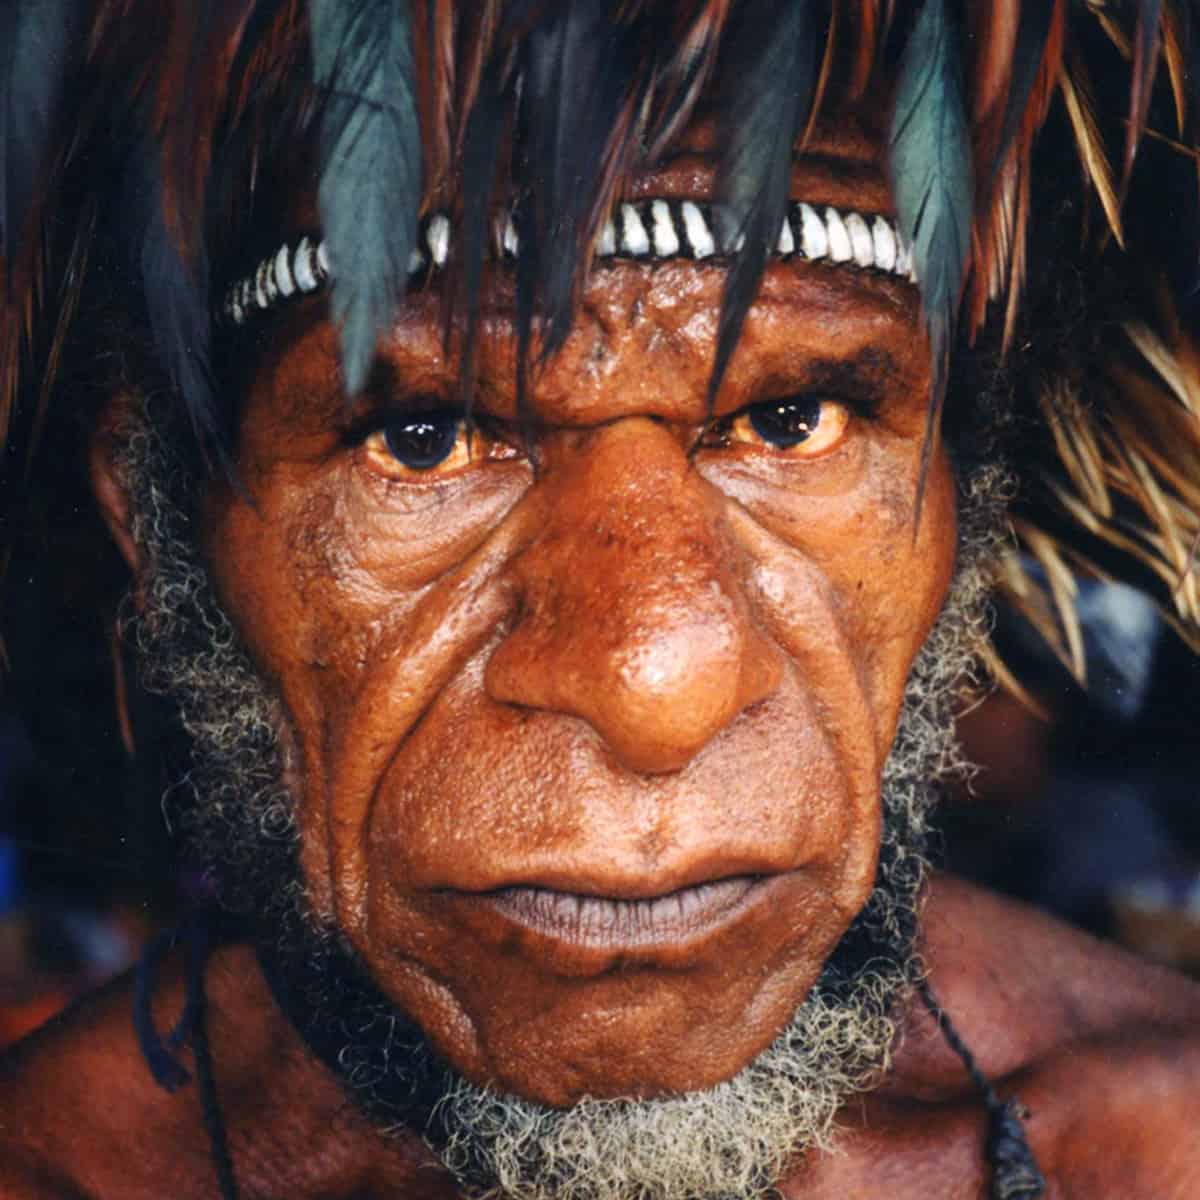 Papua Nová Guinea I kanibalové doby kamenné I cestovatelská přednáška I Jan Amos Vaněk